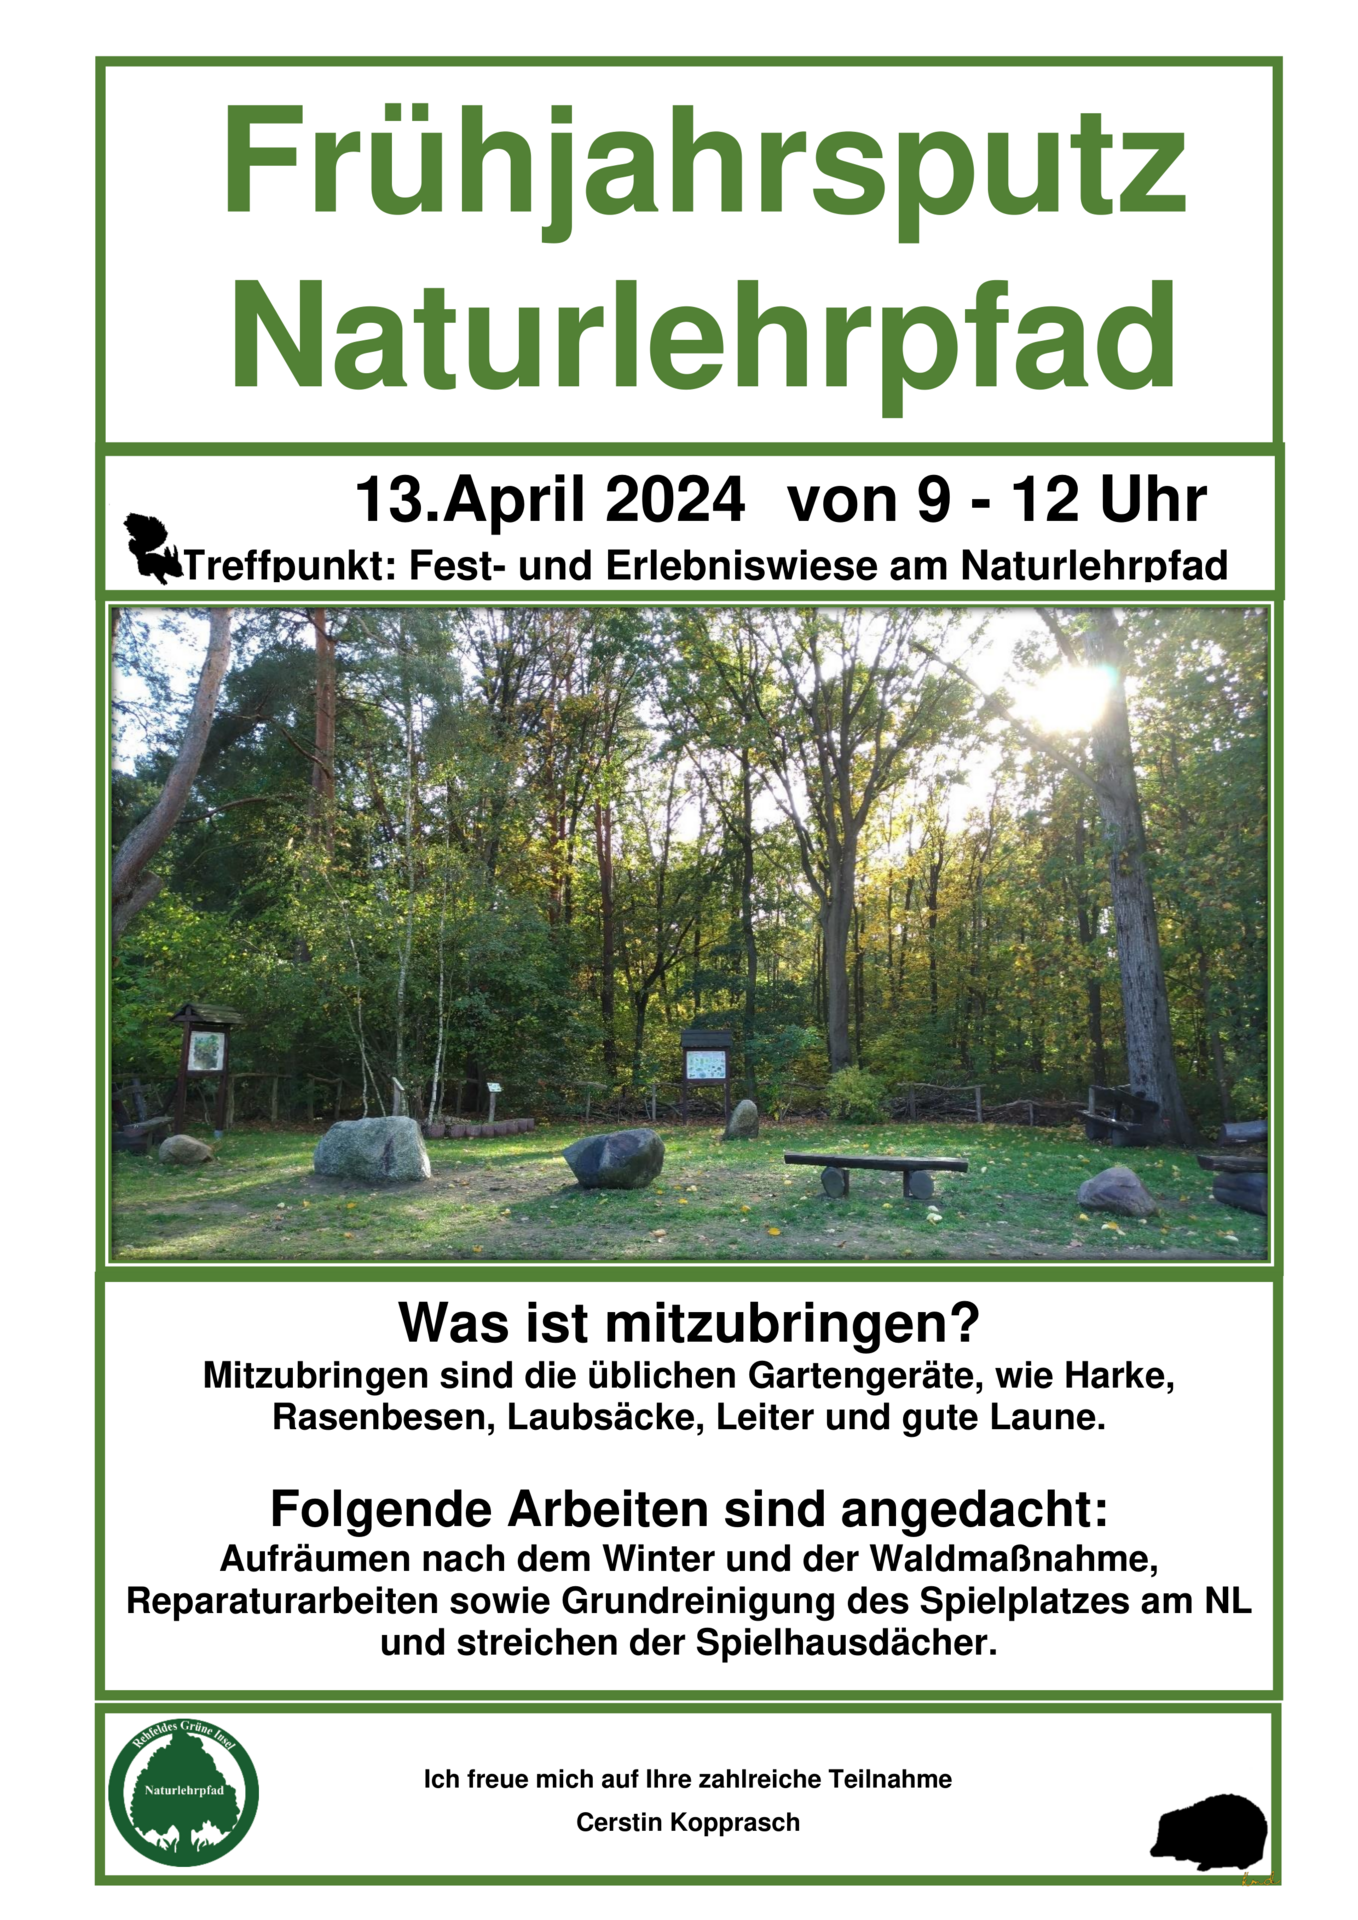 Frühjahrsputz 2024 - Flyer Naturlehrpfad